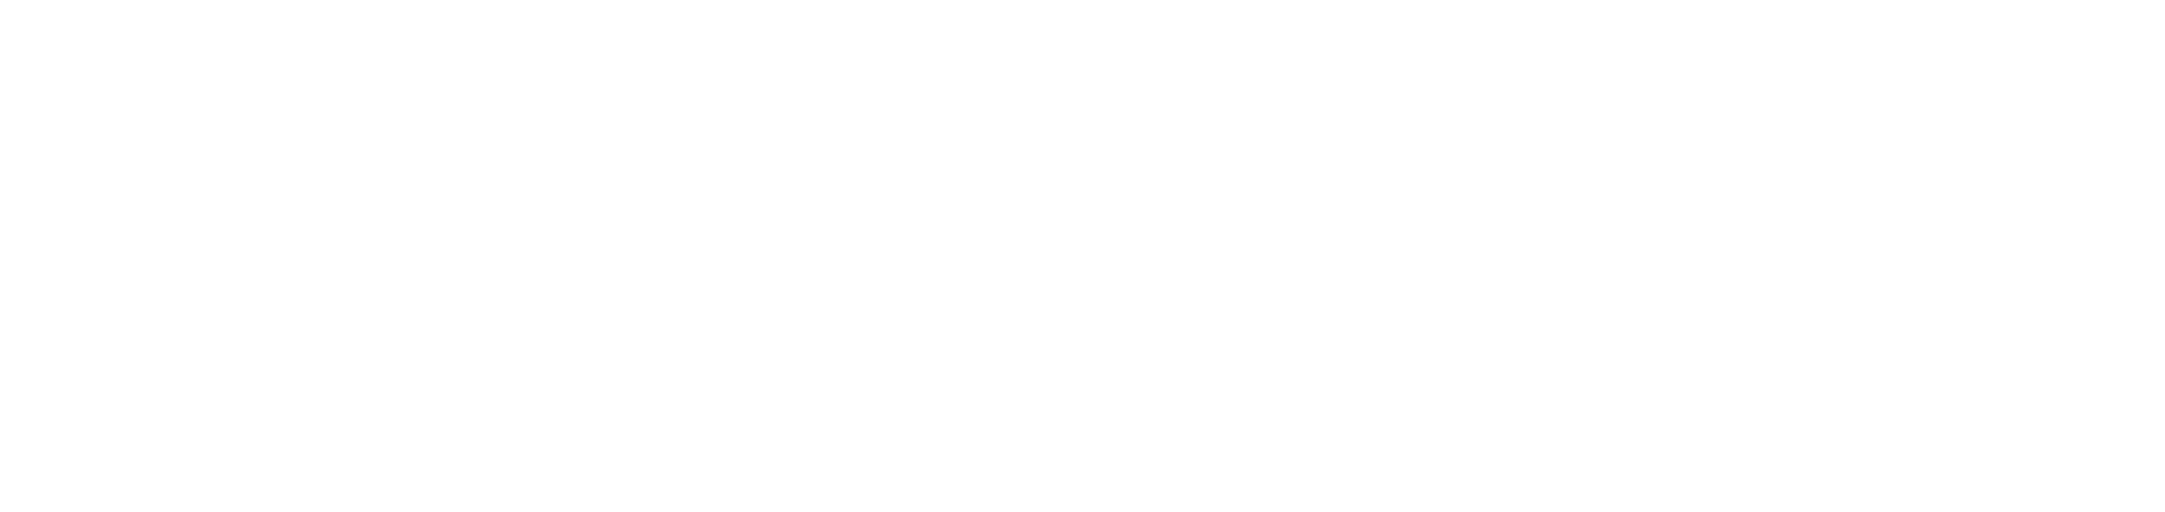 Silbertest – produkcja sprawdzianów geometrycznych